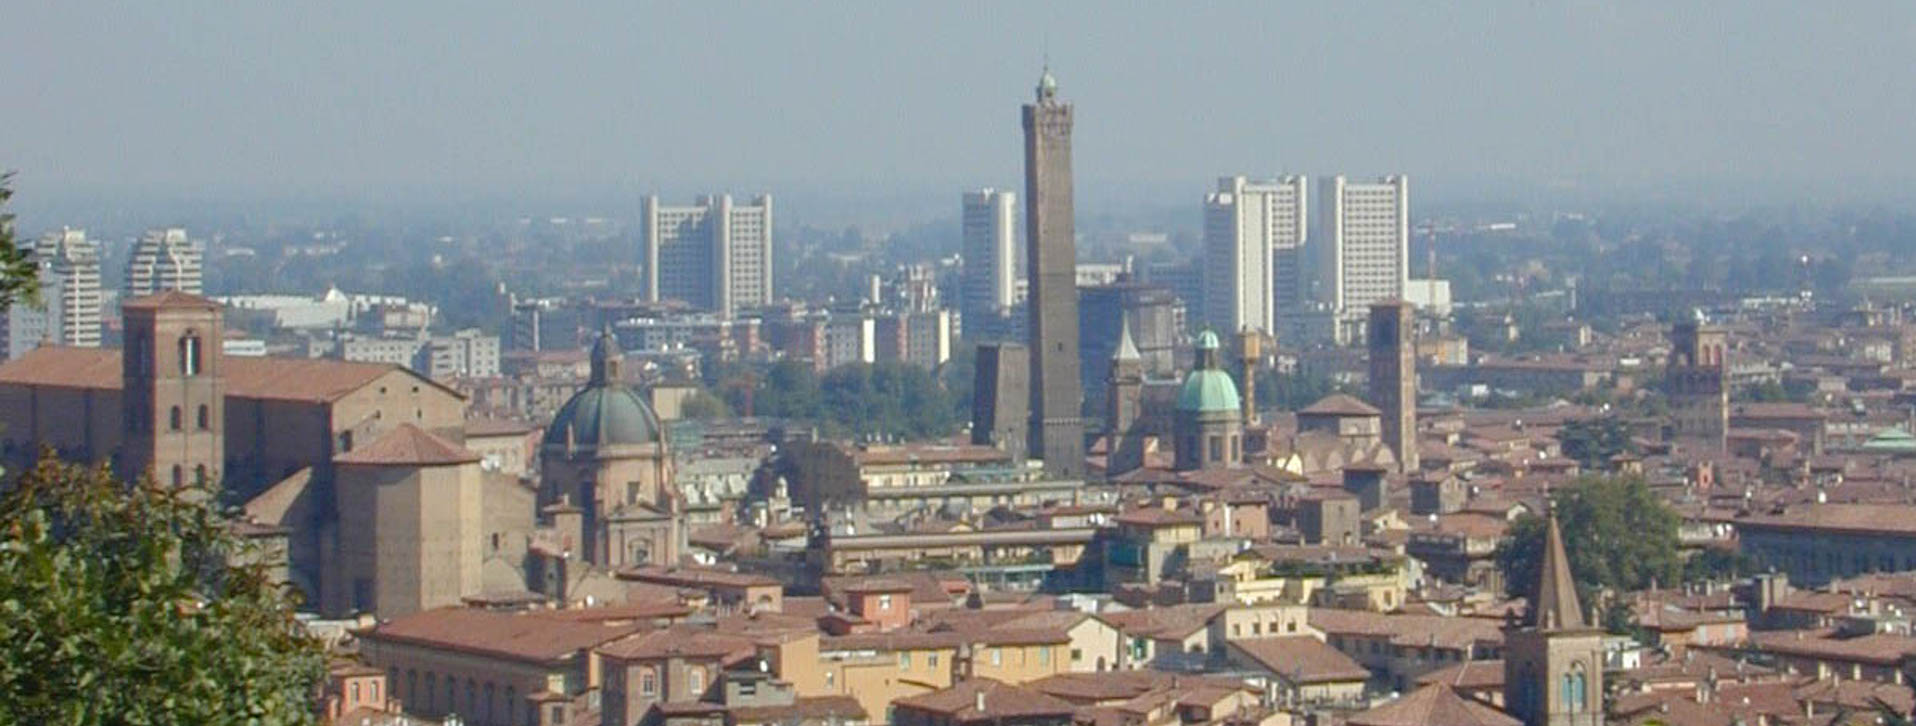 Immagine di Bologna dall'alto